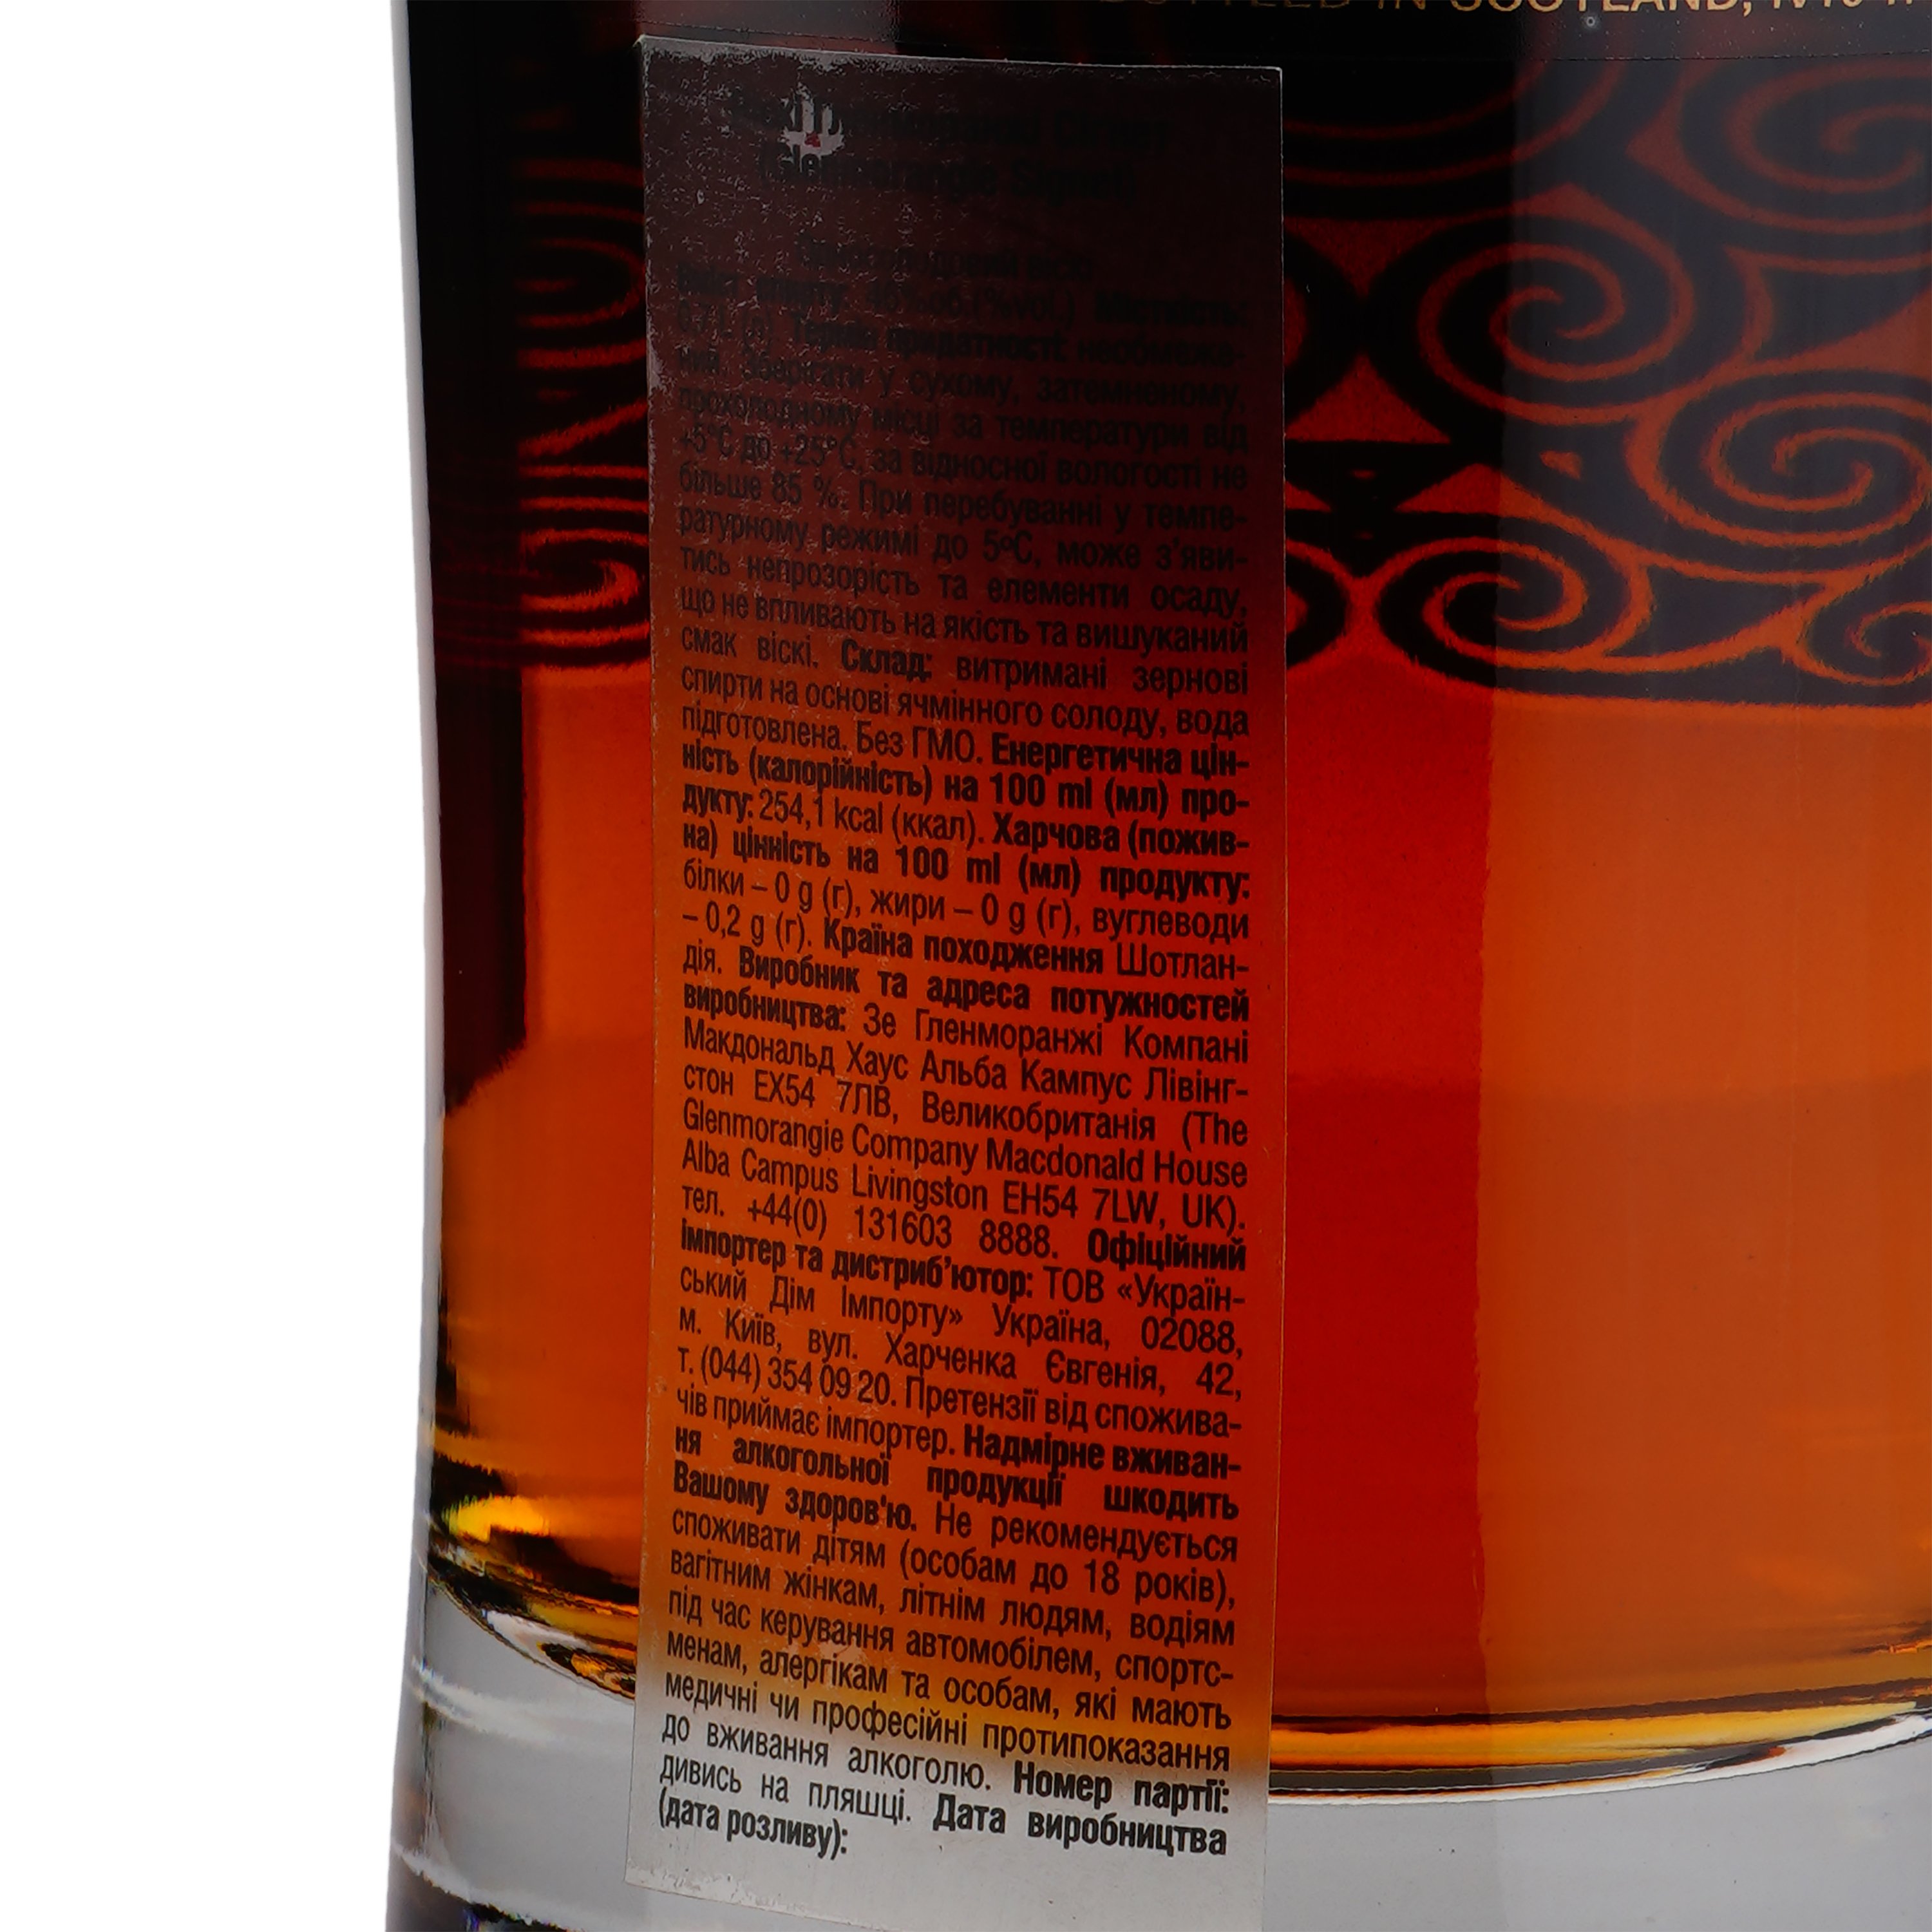 Виски Glenmorangie Signet, 21 год выдержки, в подарочной упаковке, 46%, 0,7 л (566229) - фото 3